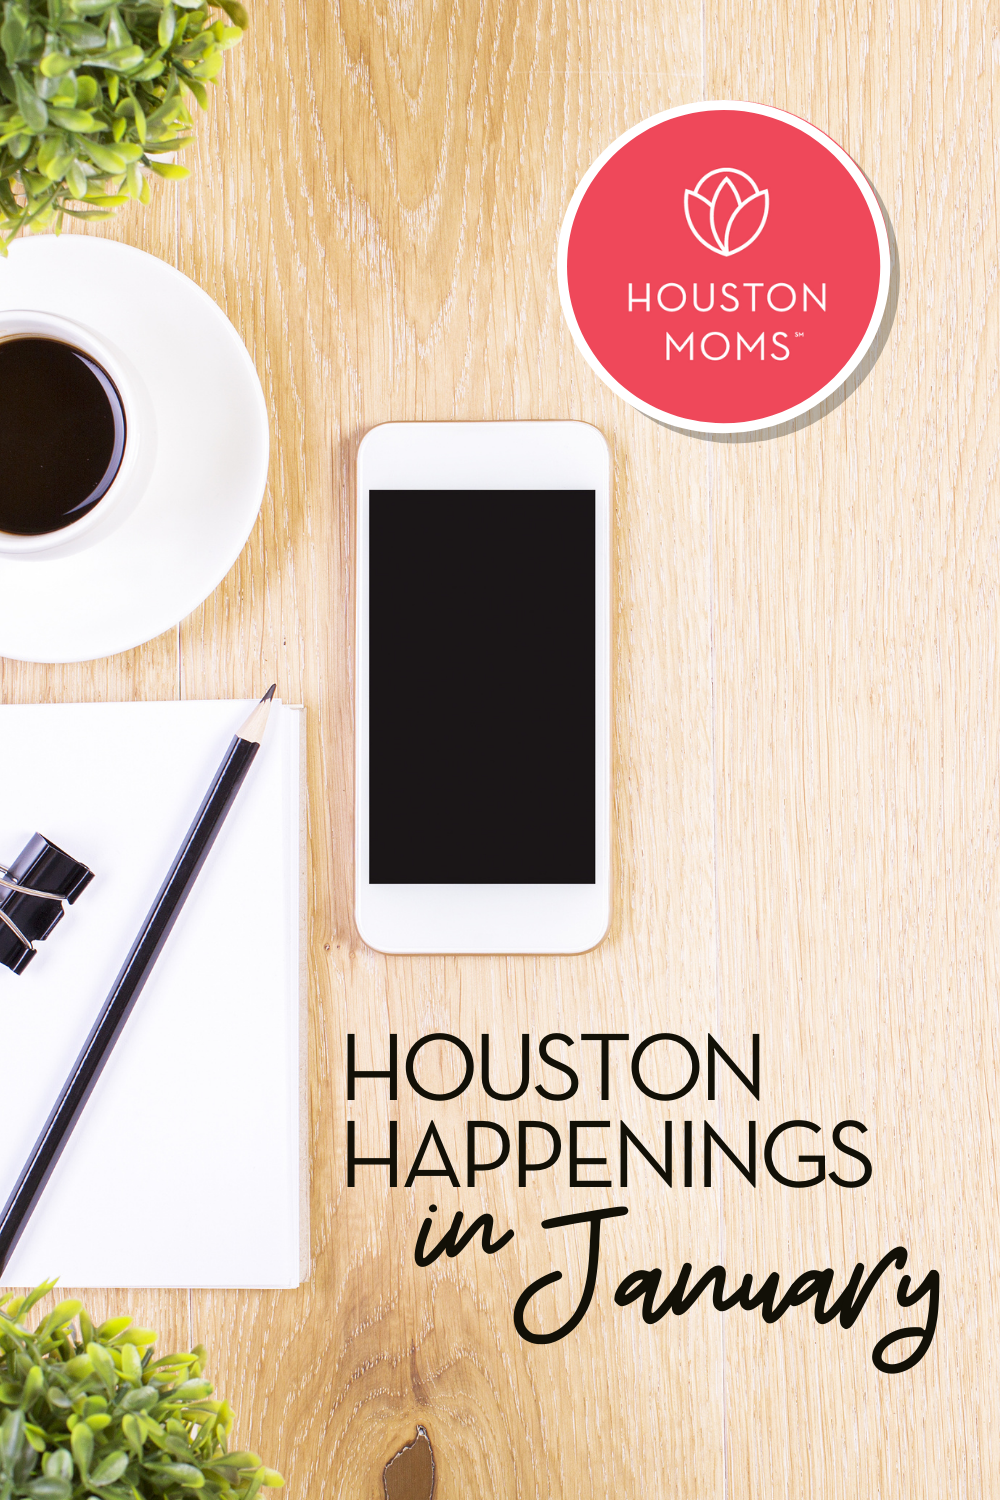 Houston Moms "Houston Happenings in January 2021" #houstonmoms #houstonmomsblog #momsaroundhouston